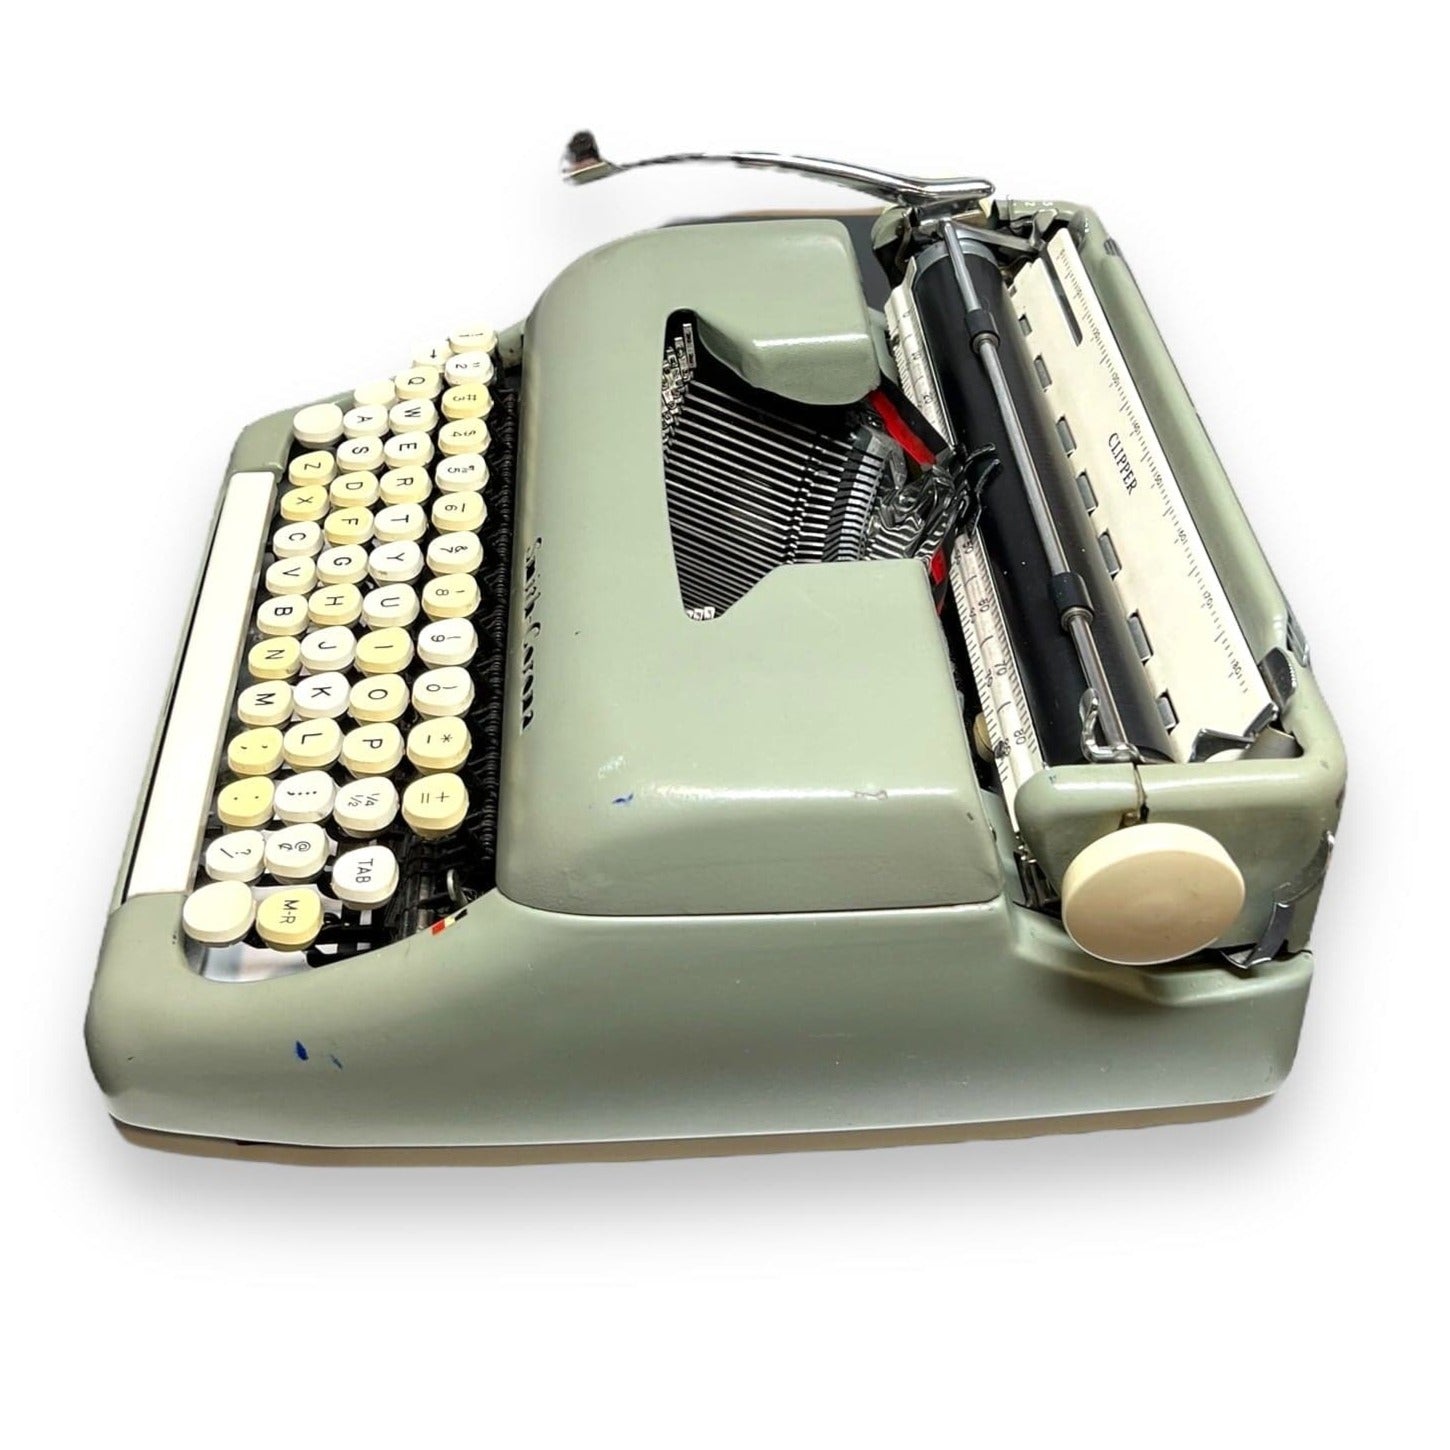 Toronto Typewriters Manual Typewriter Smith-Corona Clipper Typewriter